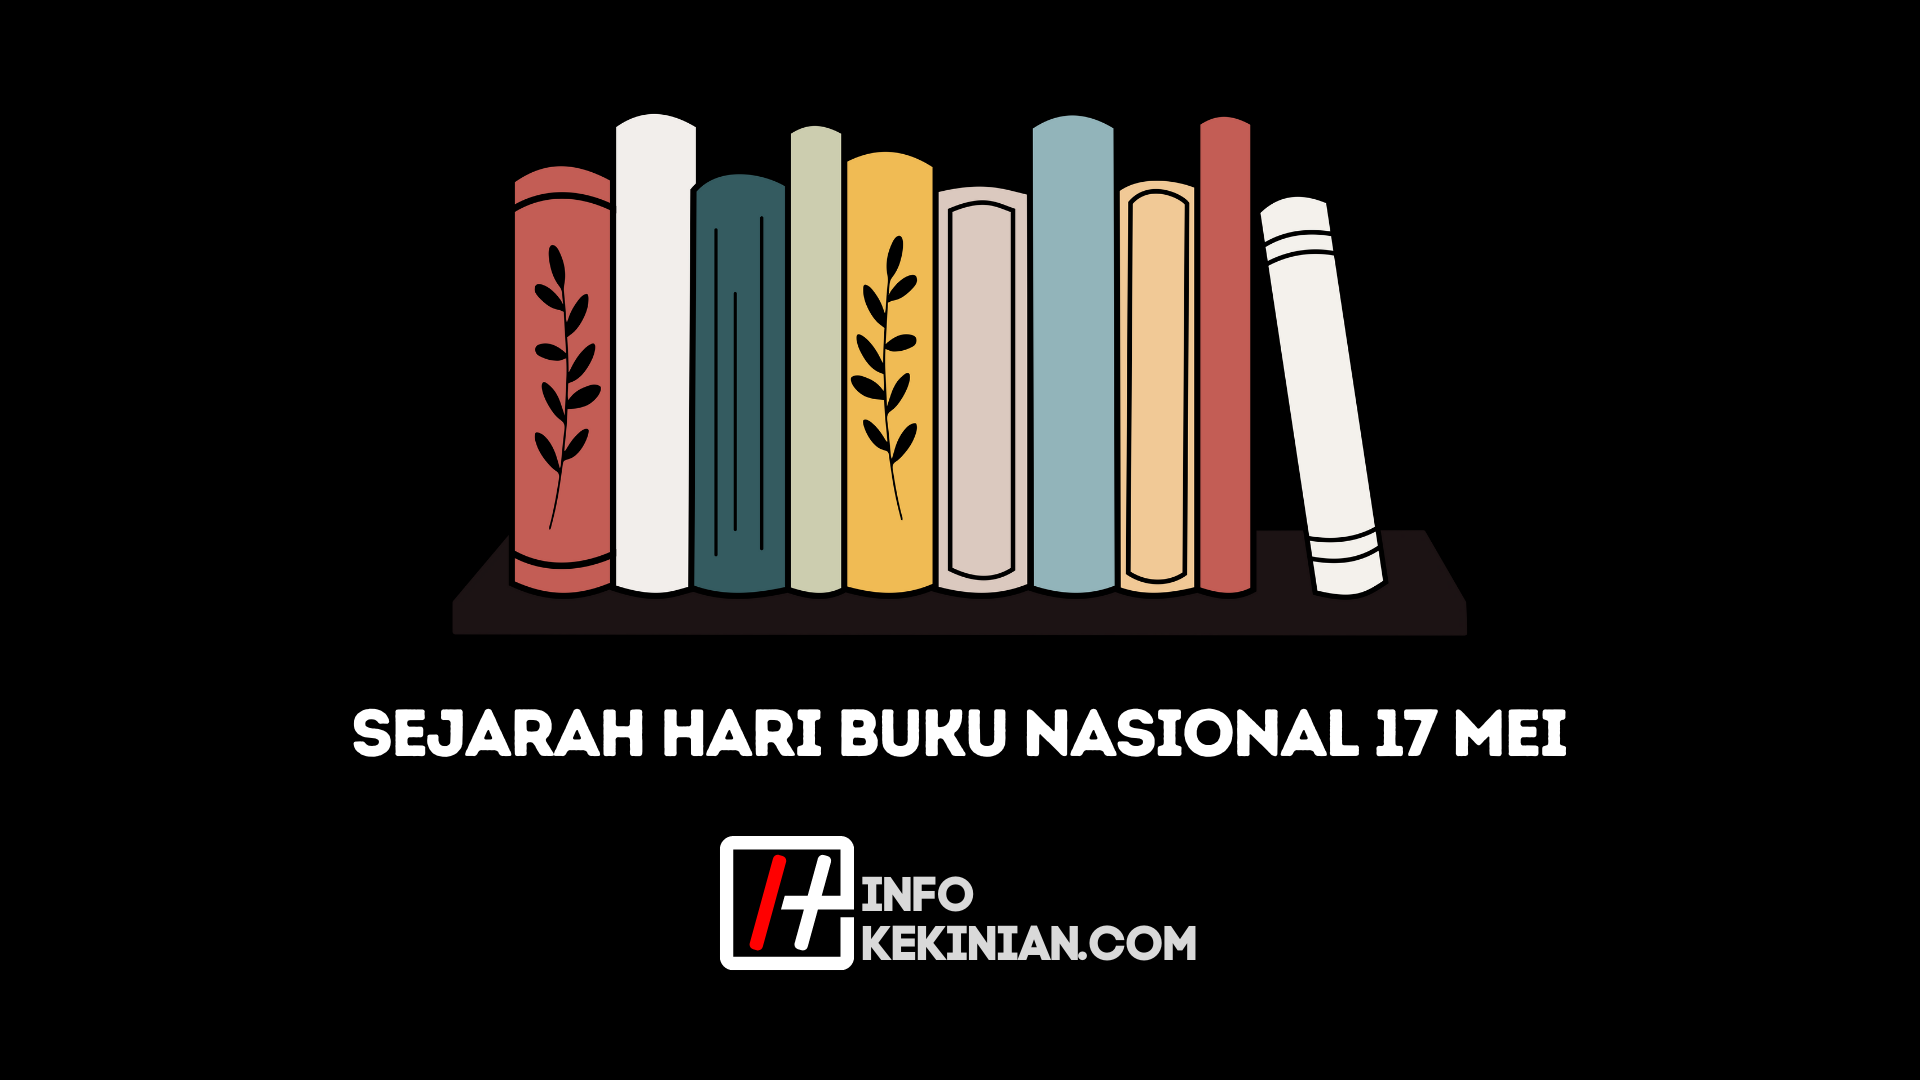 Sejarah Hari Buku Nasional